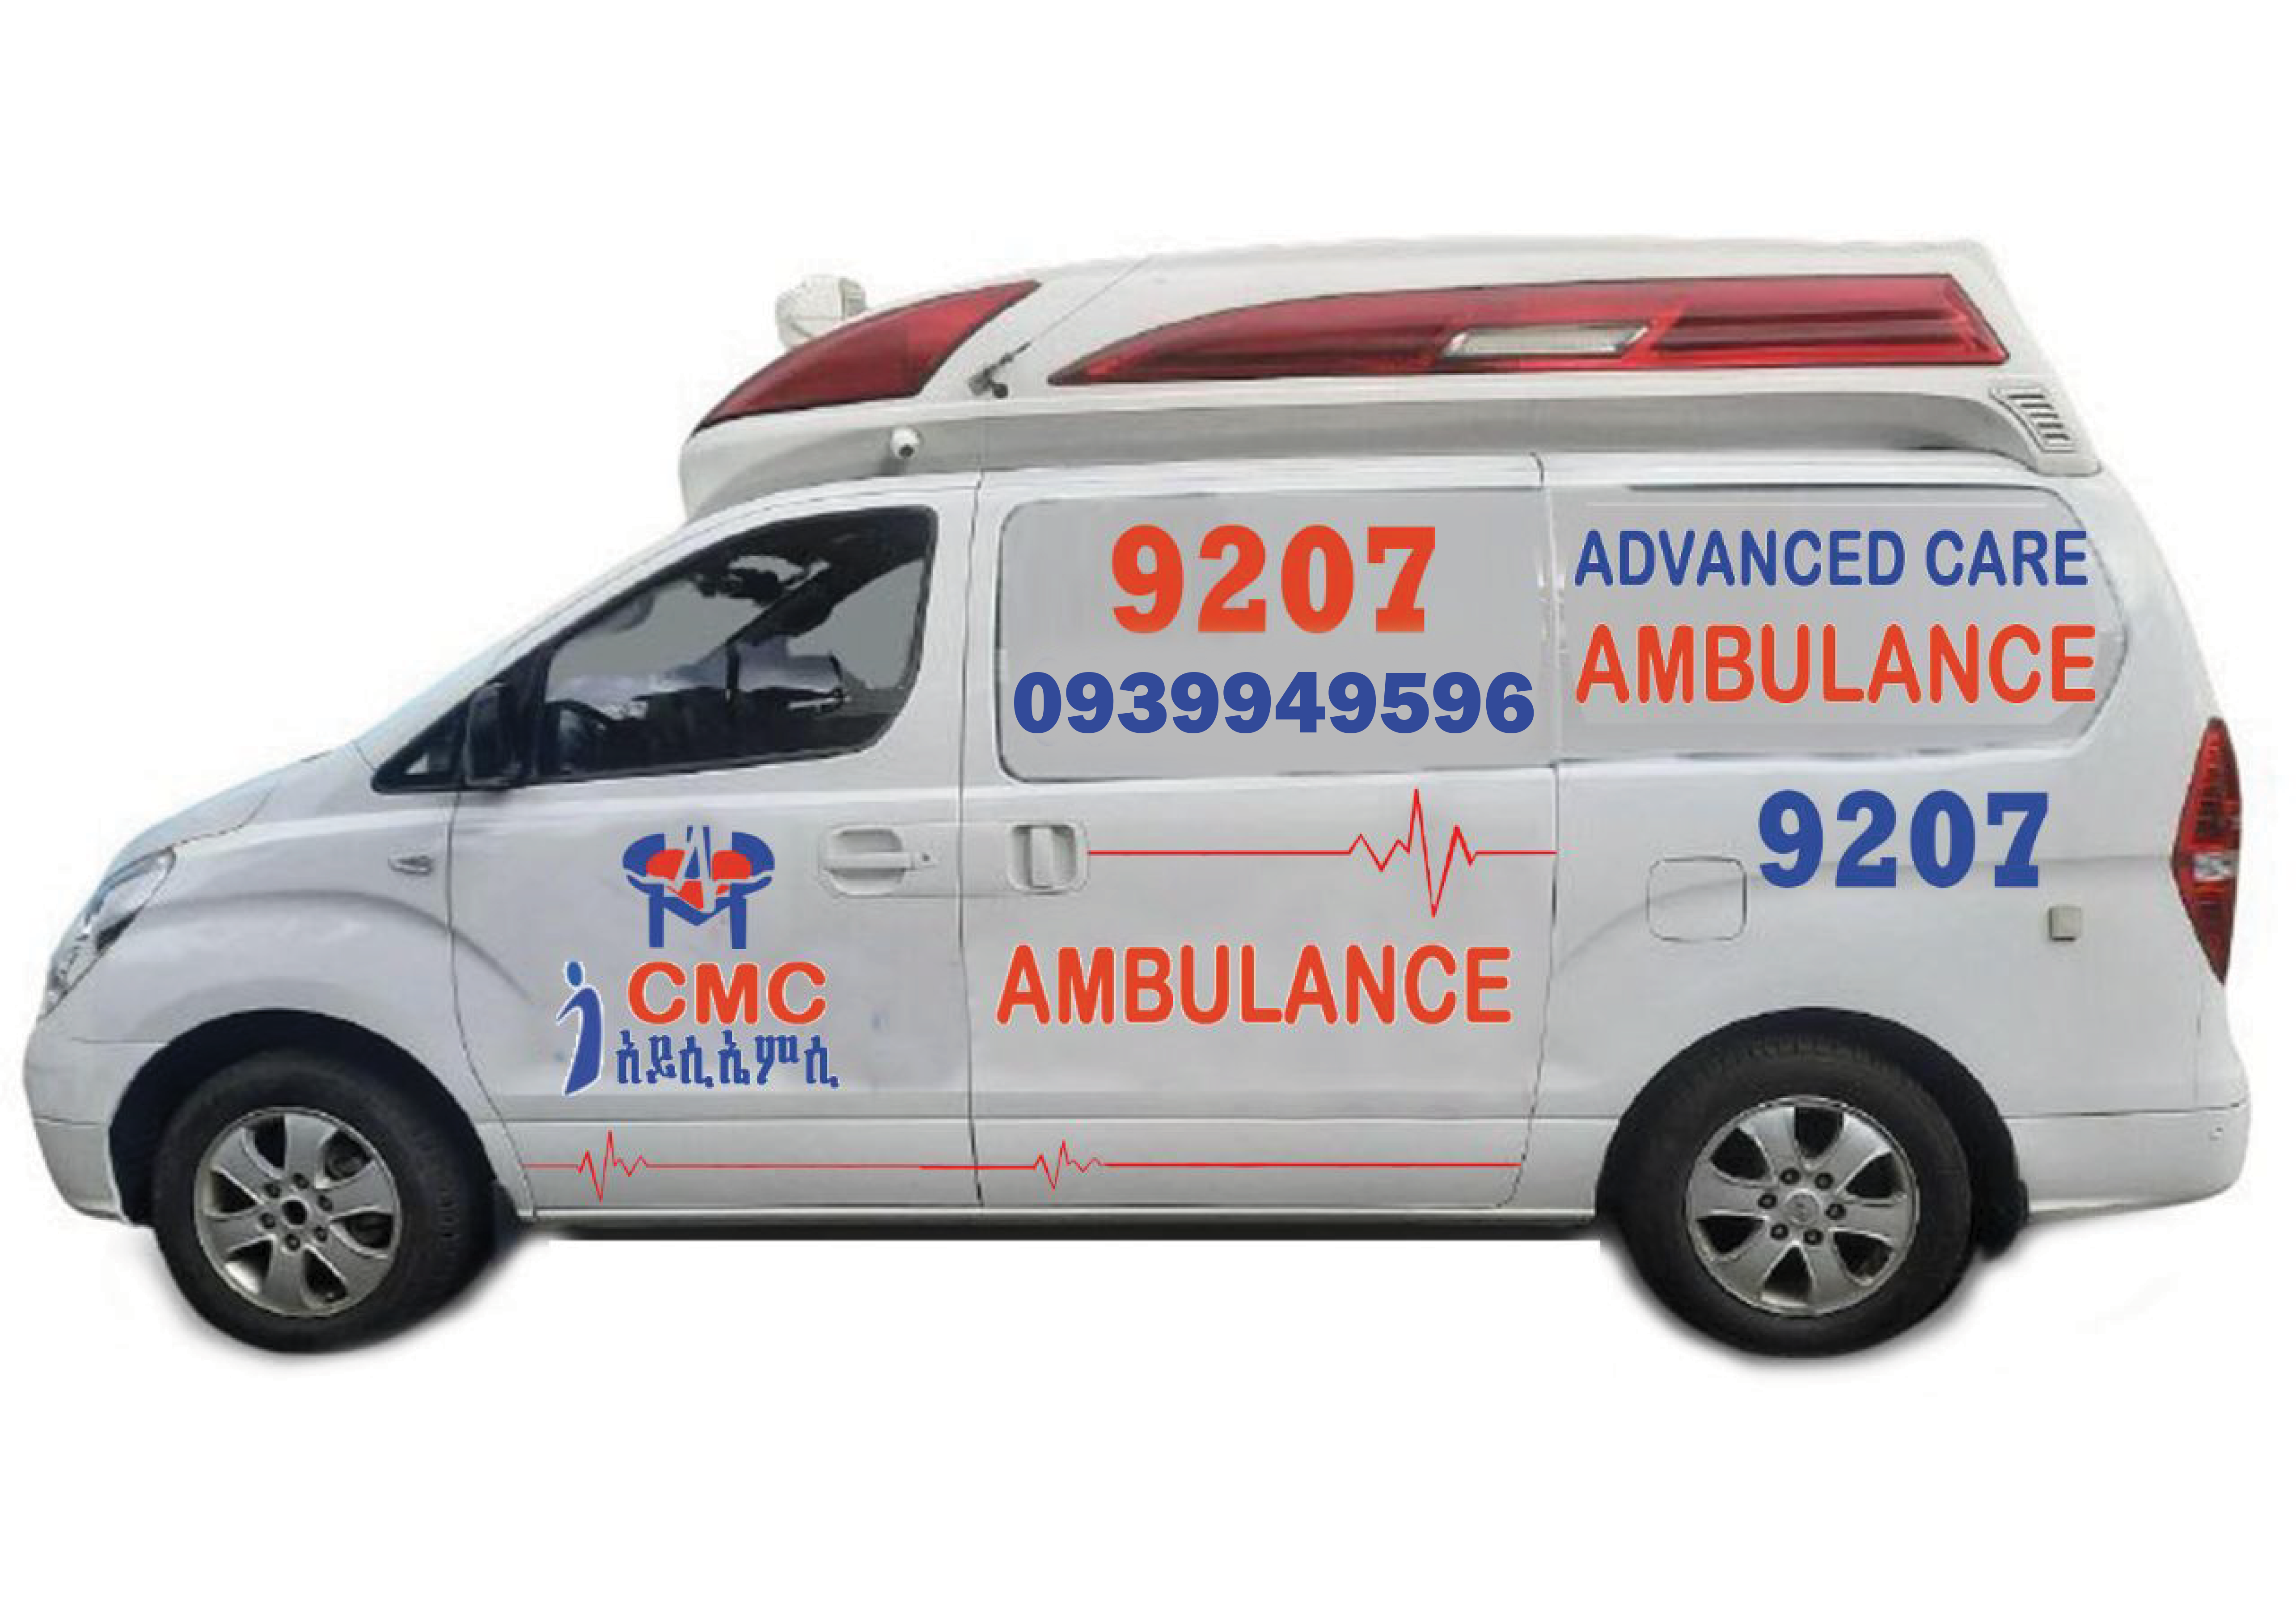 Ambulance Number - 09 39 94 95 96 | Ambulance Service